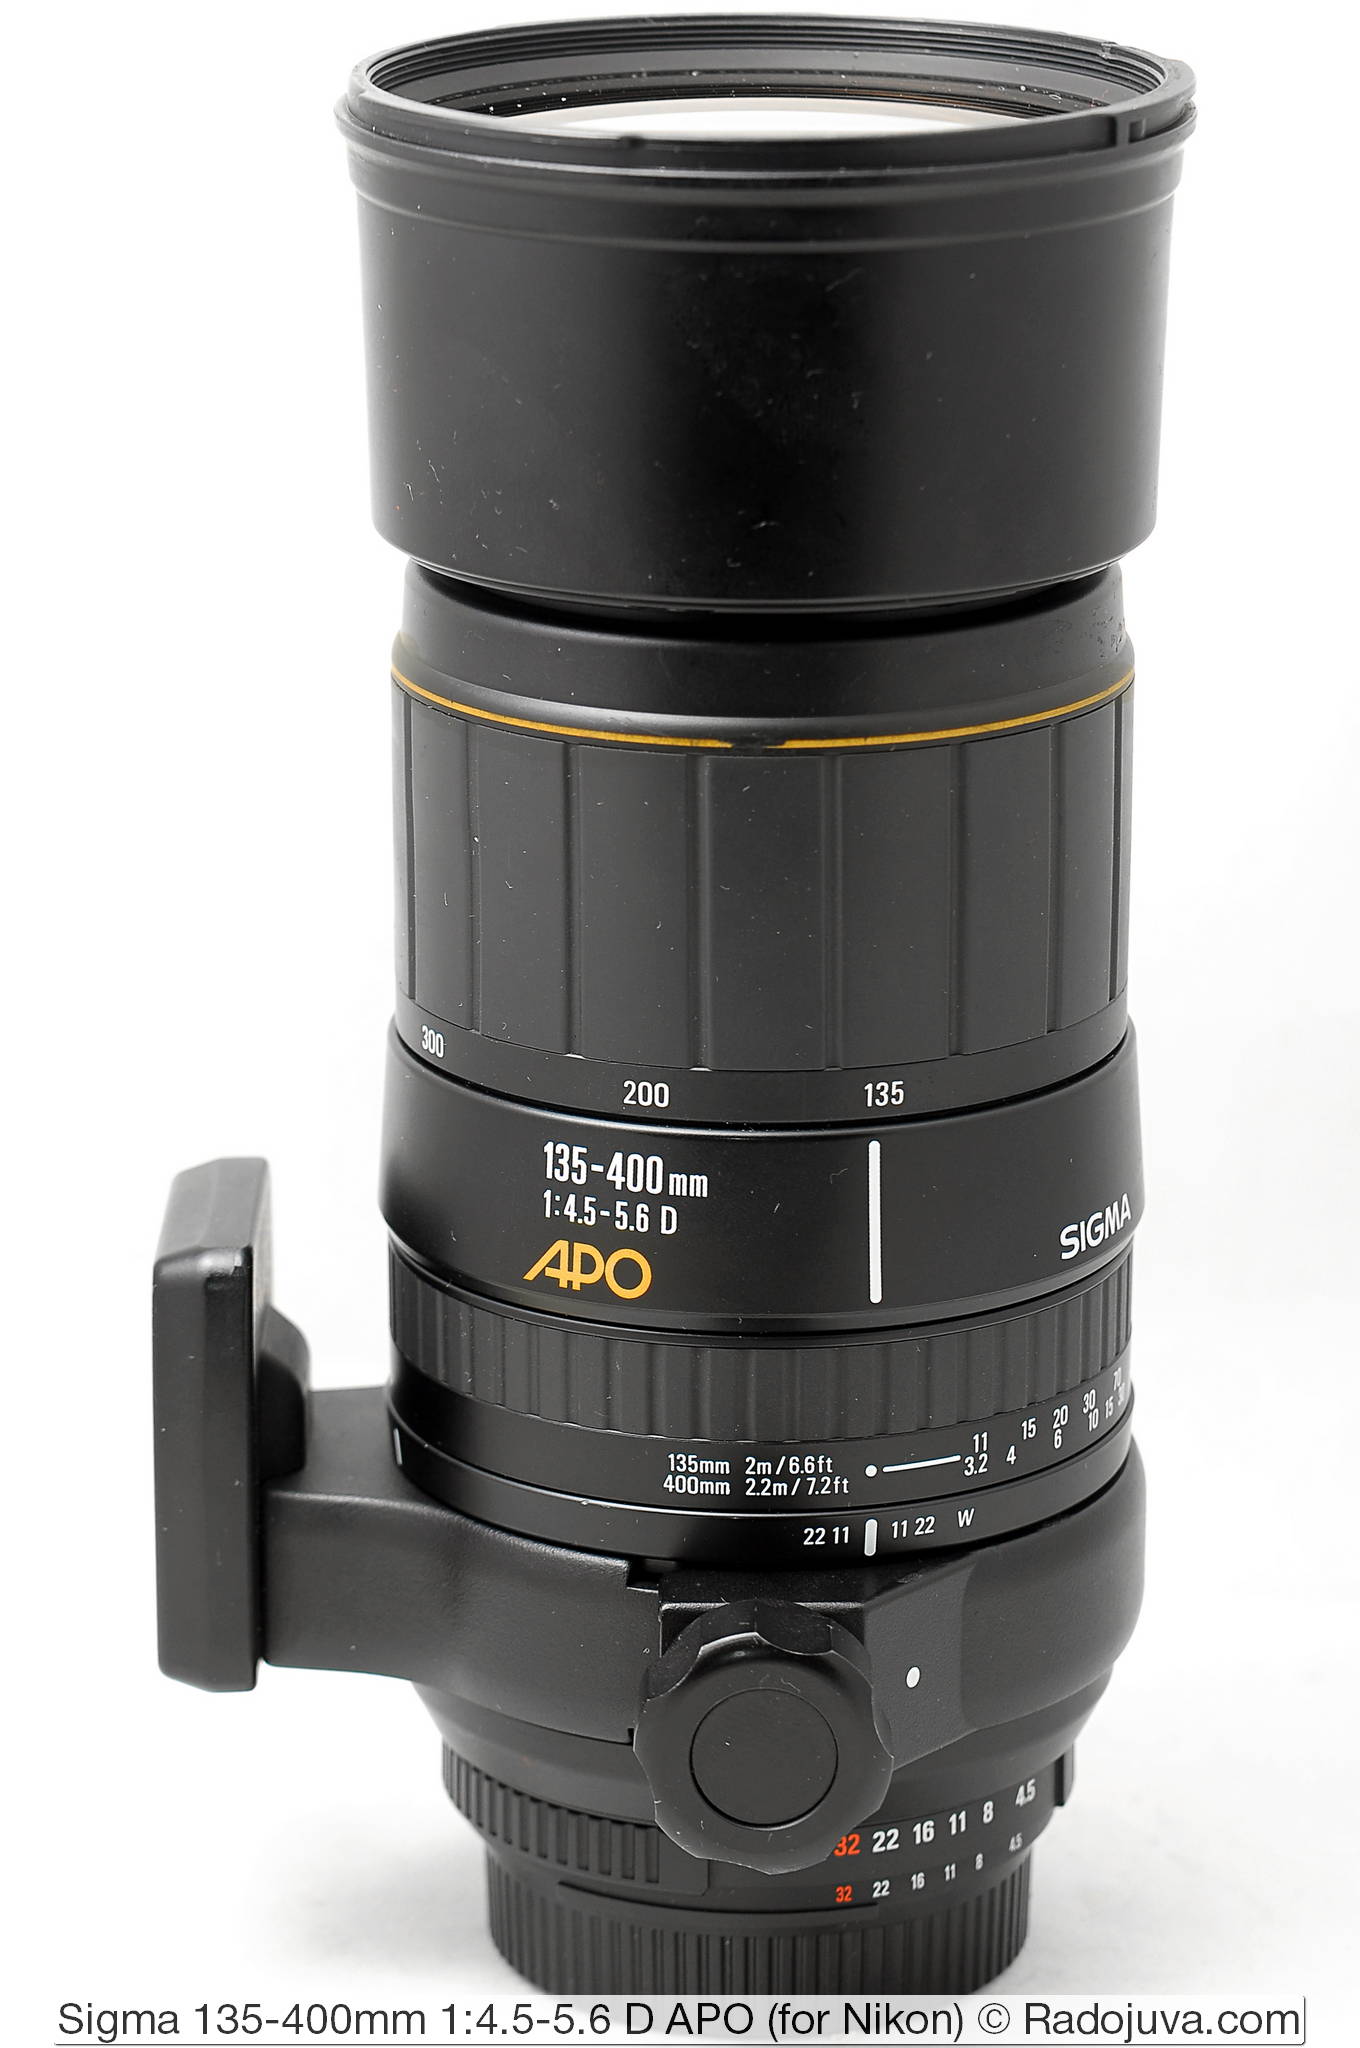 Lens Hood Universal 77mm black for Sigma 135-400 mm 4.5-5.6 DG APO RF 